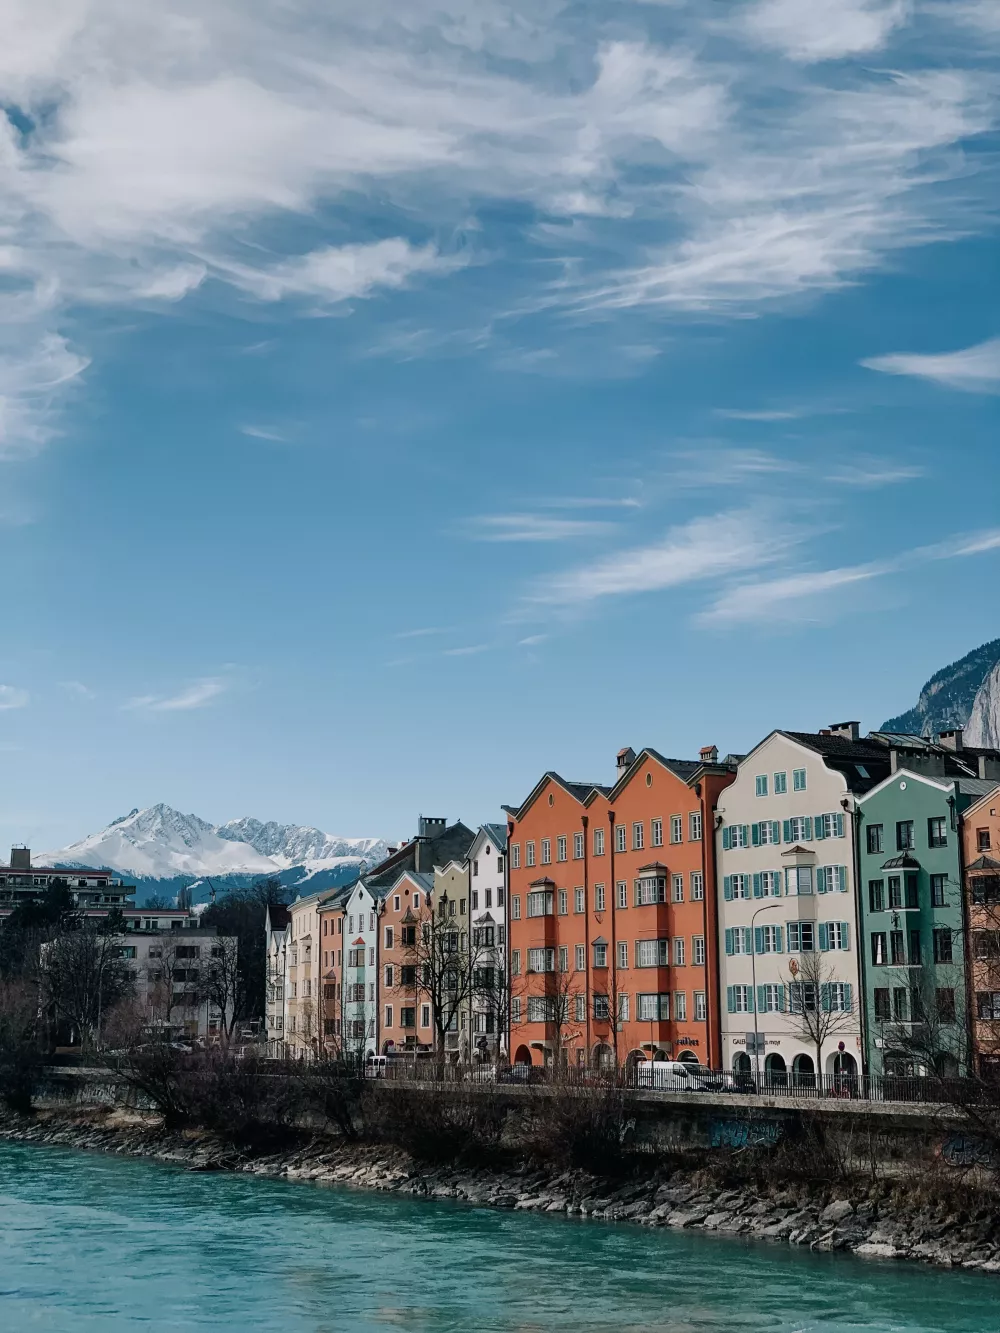 Řeka Inn protéká Innsbruckem